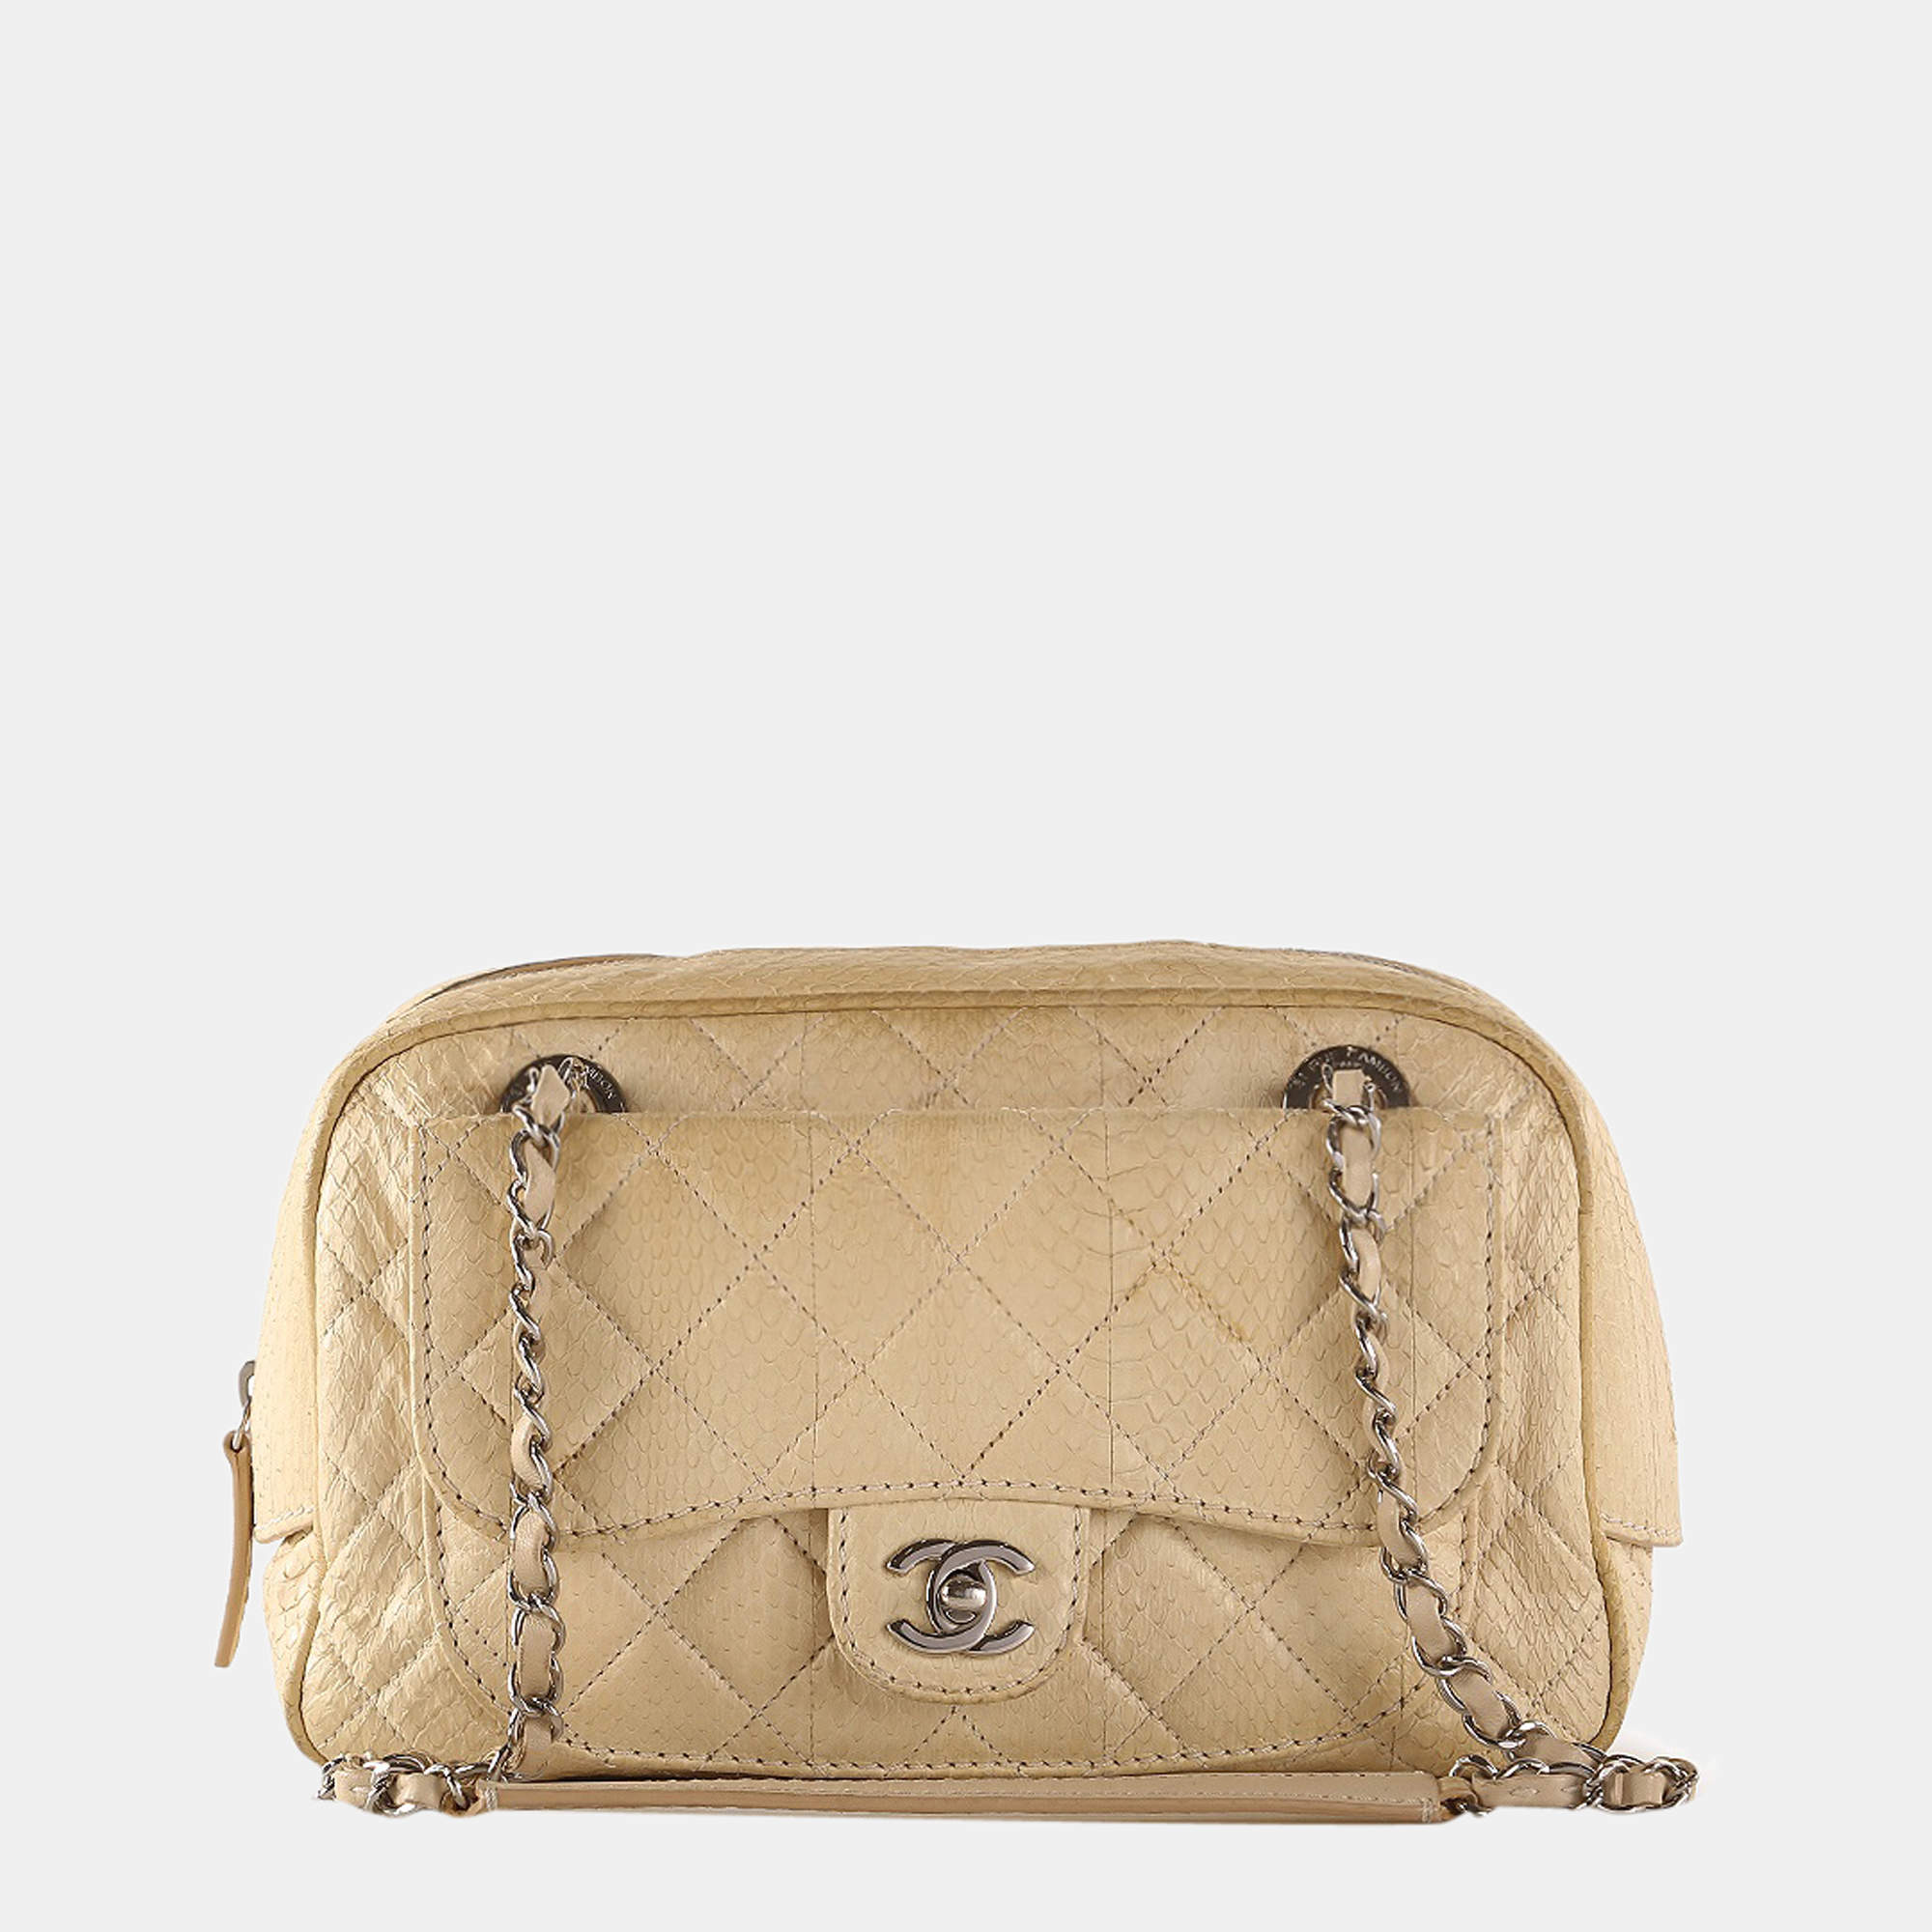 Chanel 2.55 Python Flap Bag